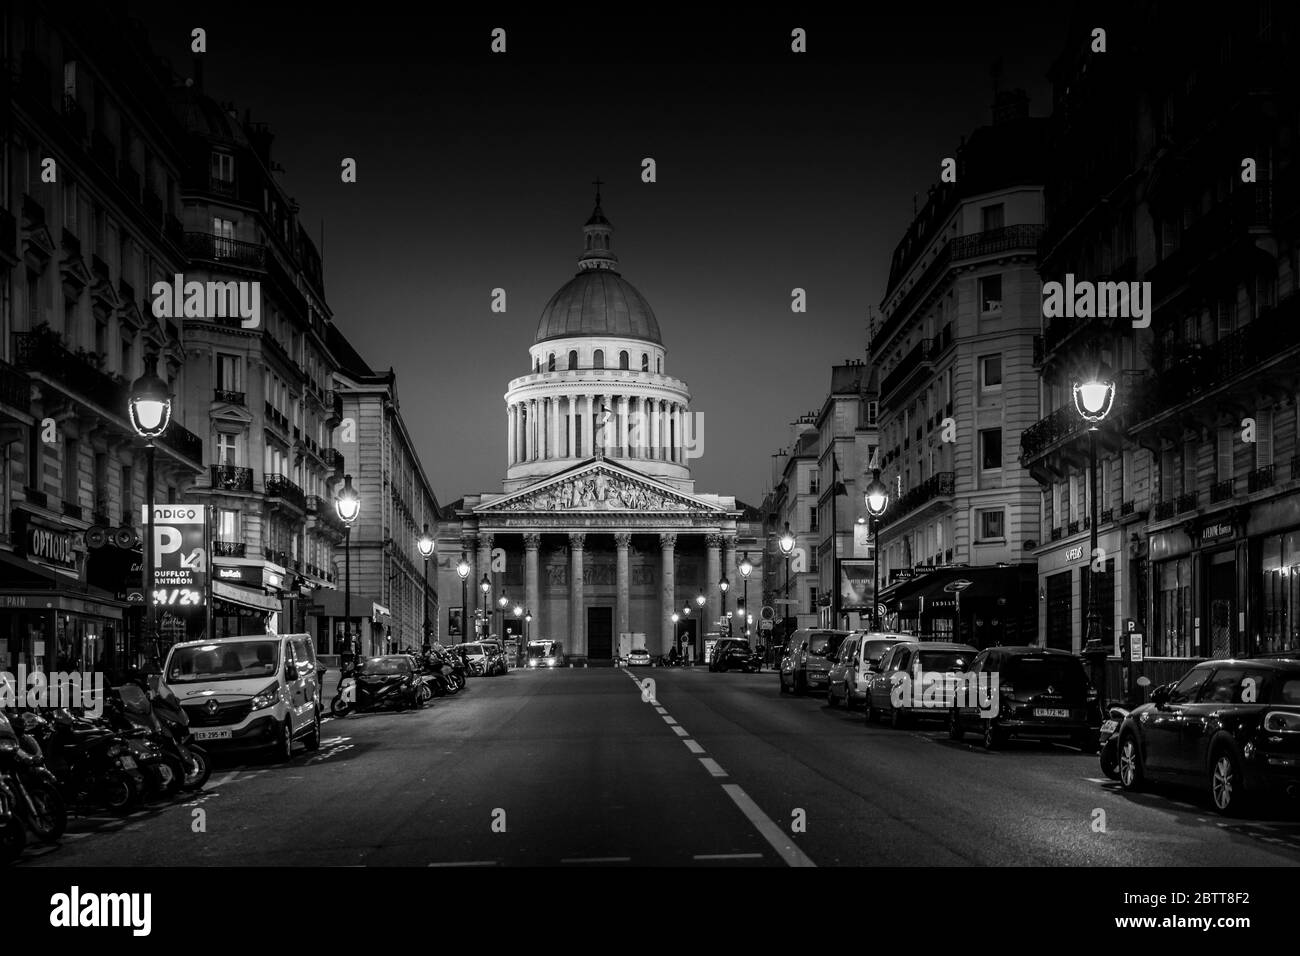 Paris, France - 26 mars 2020 : 10ème jour de confinement en raison de Covid-19 devant le Panthéon à Paris. Personne dans la rue Banque D'Images